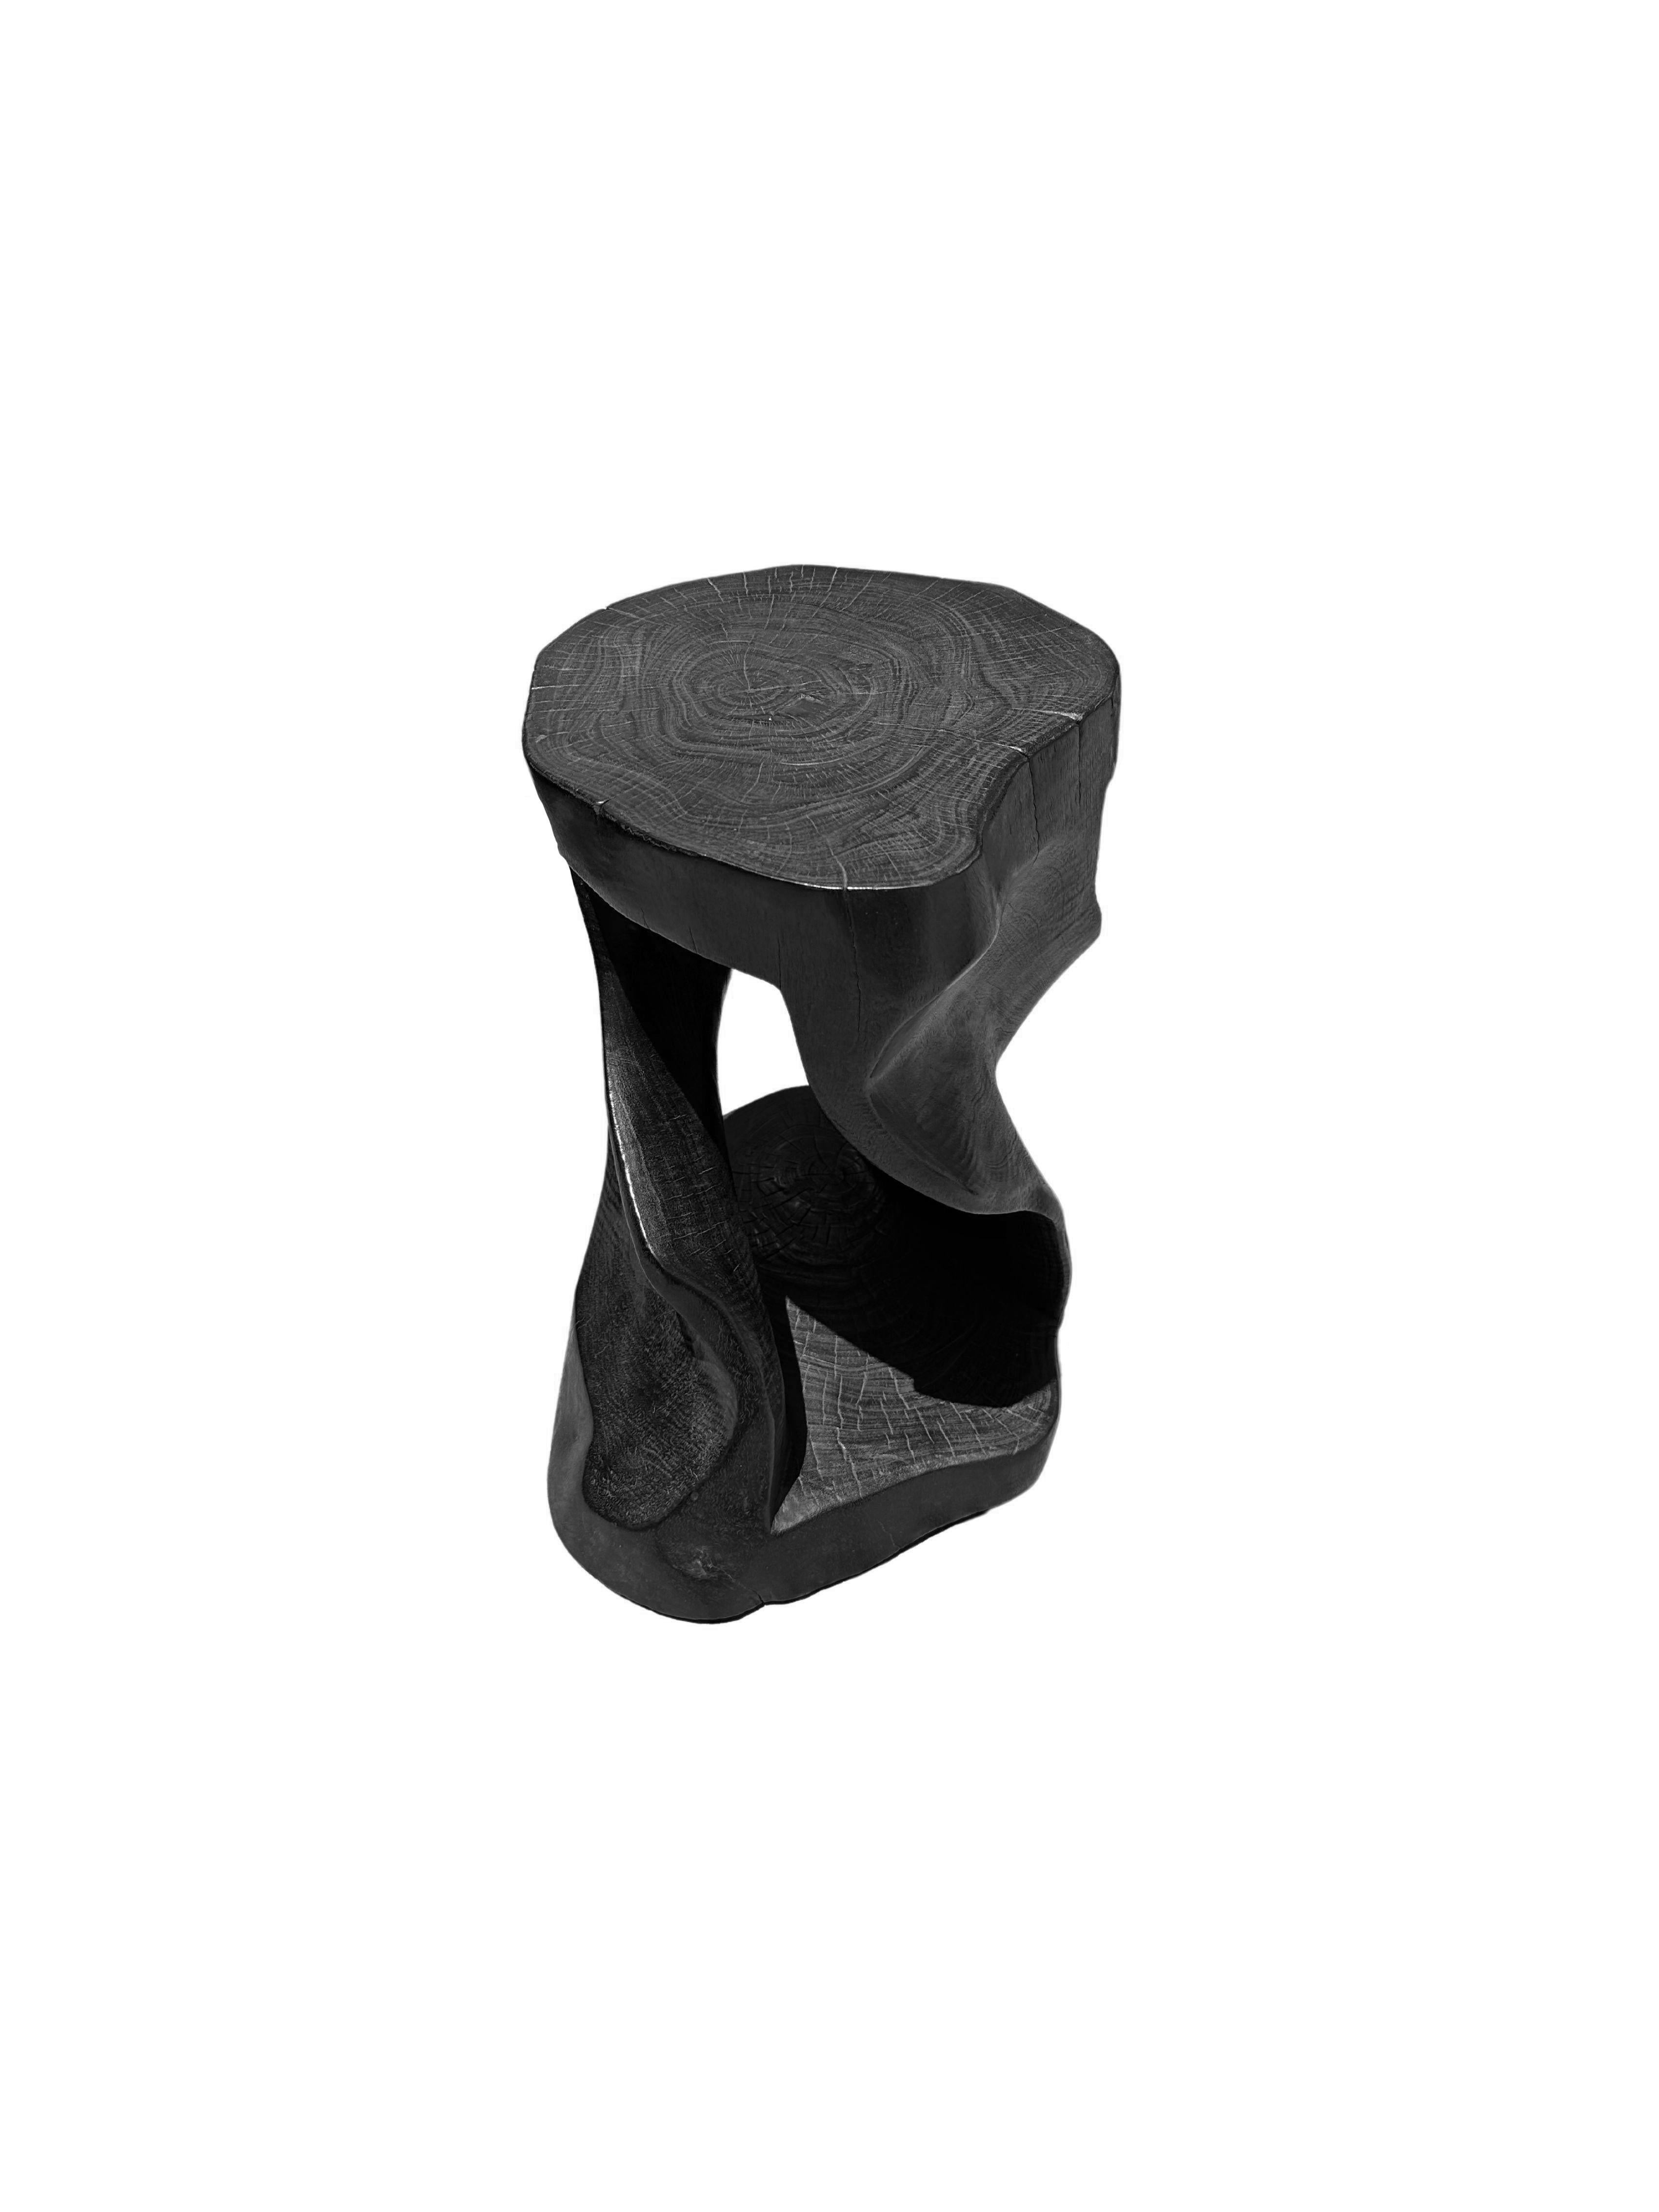 Un tabouret ou une table d'appoint merveilleusement sculptural, avec un mélange de textures et de nuances de bois. Il présente un design en spirale, avec un noyau apparent. Pièce unique, sculpturale et polyvalente, cette chaise a été fabriquée à